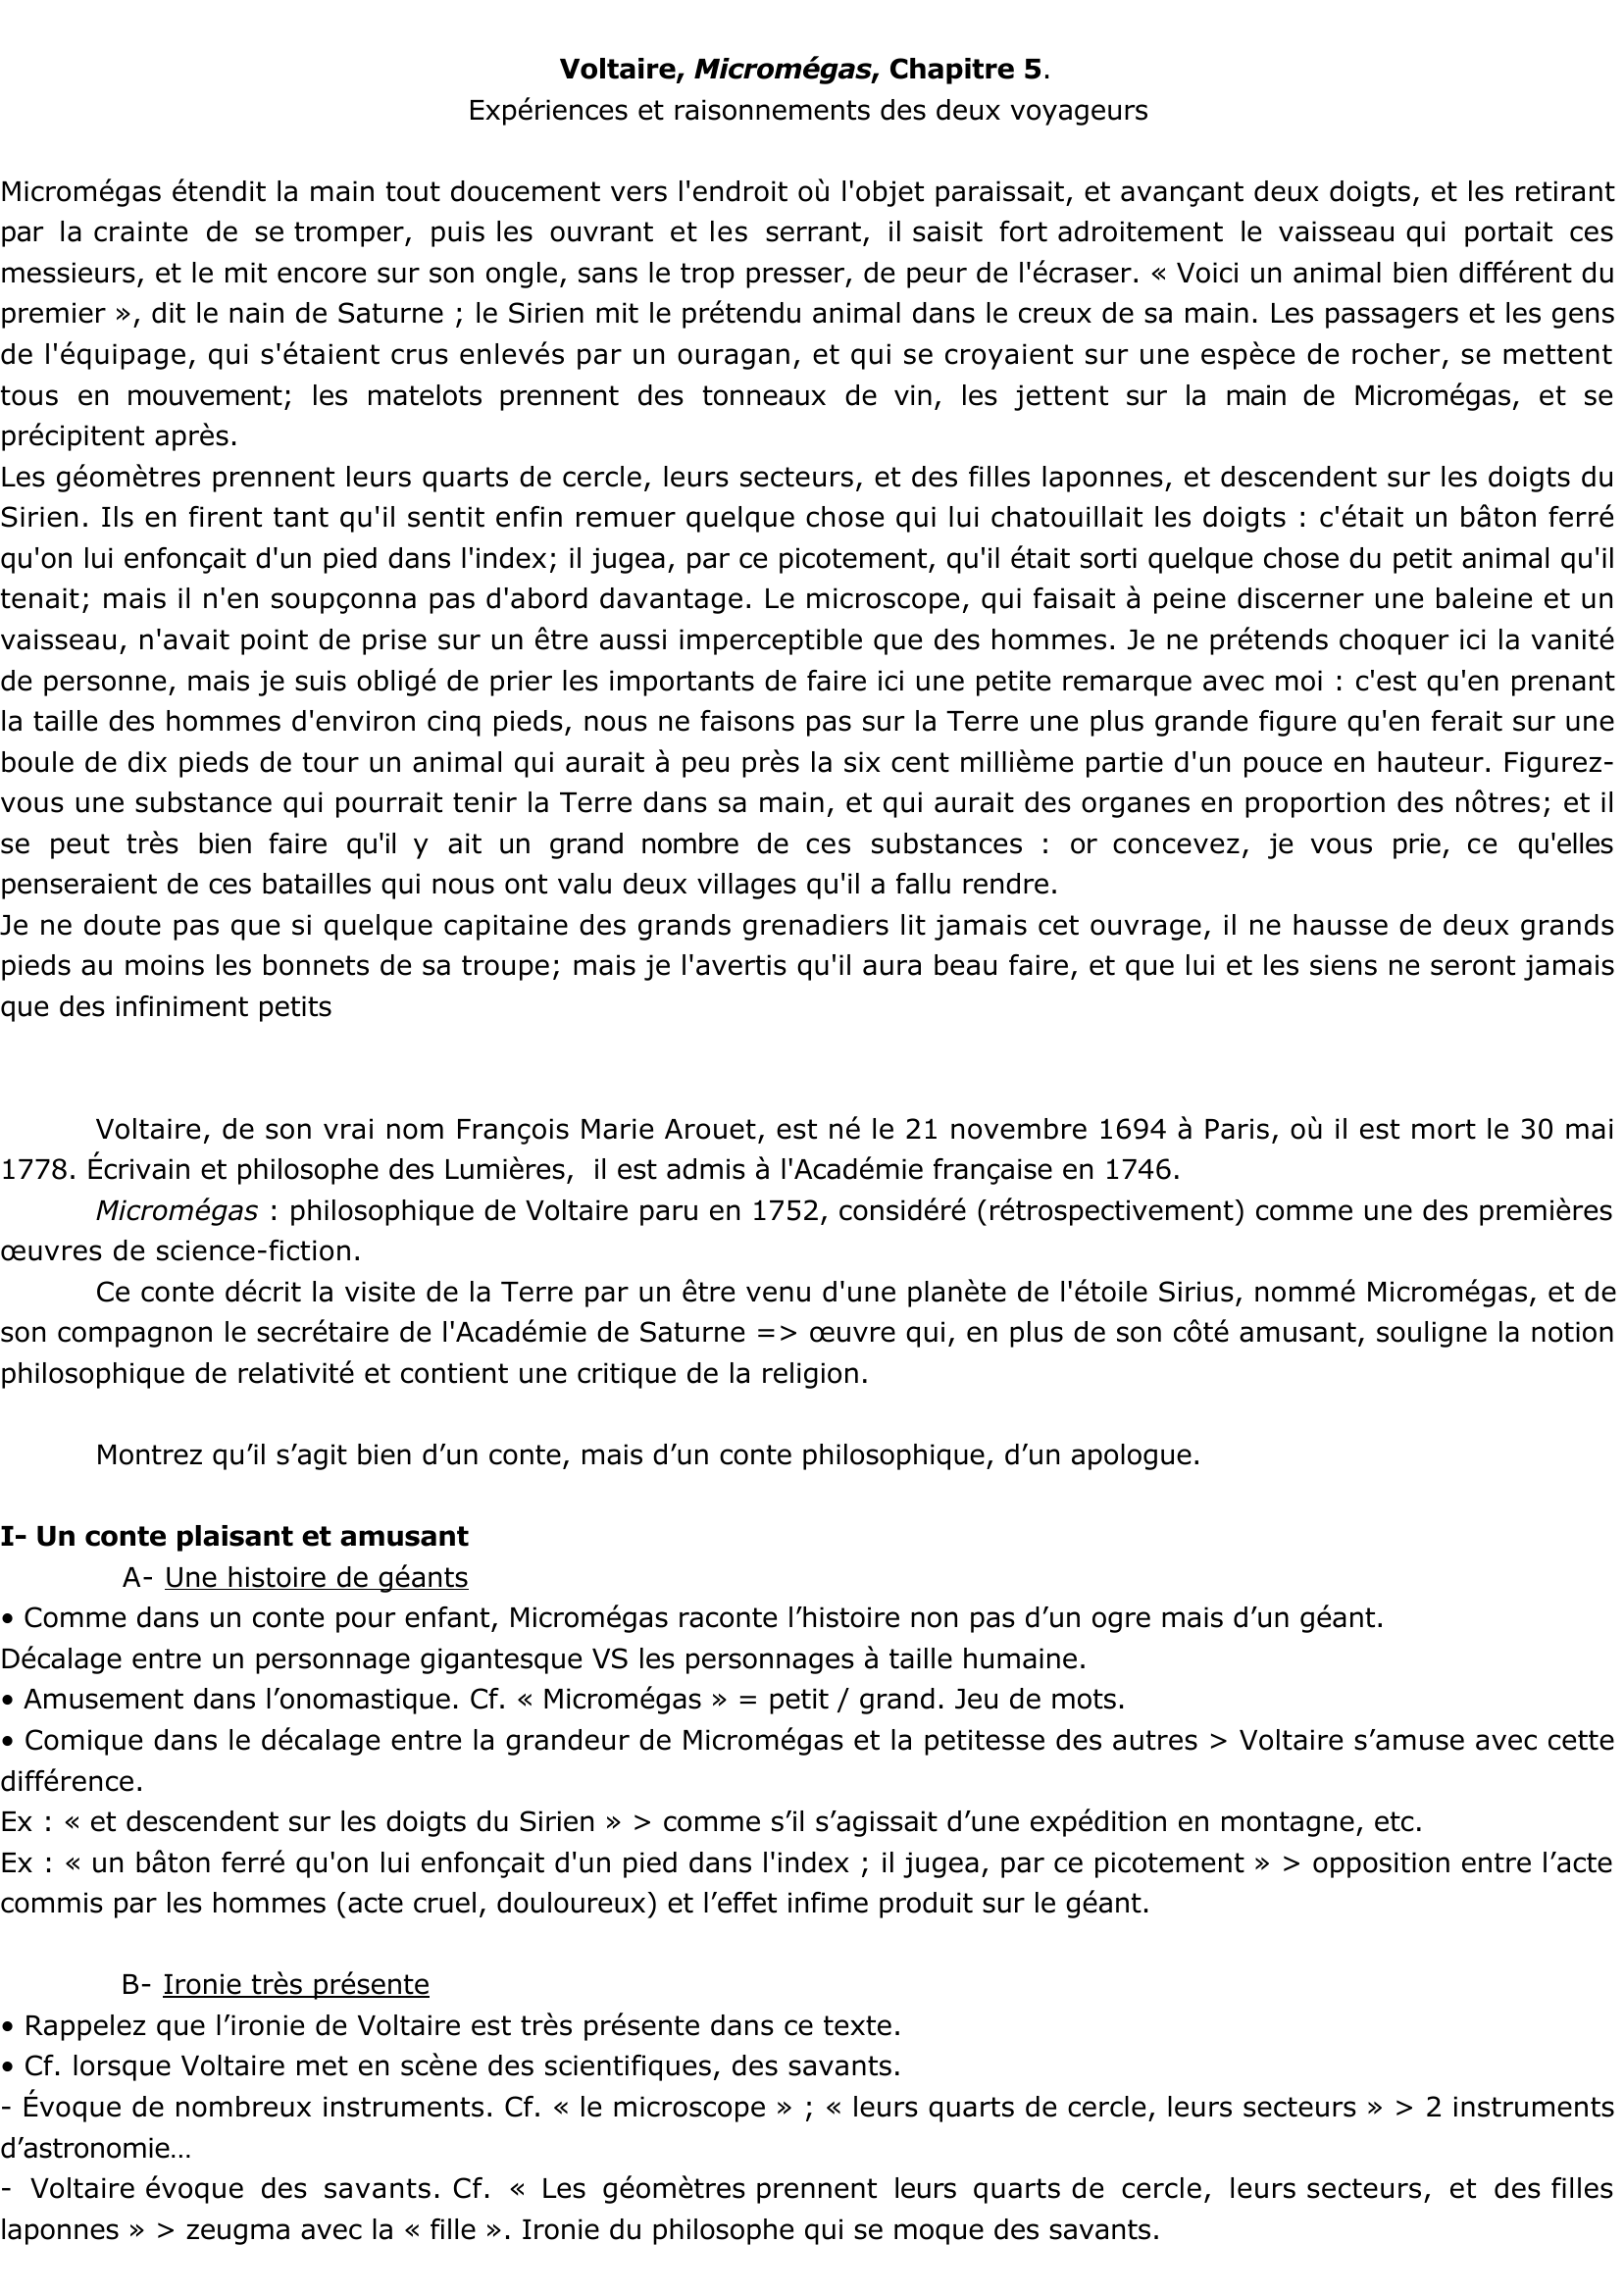 Prévisualisation du document Voltaire, Micromégas, chapitre 5 - EXPERIENCES ET RAISONNEMENTS DES DEUX VOYAGEURS